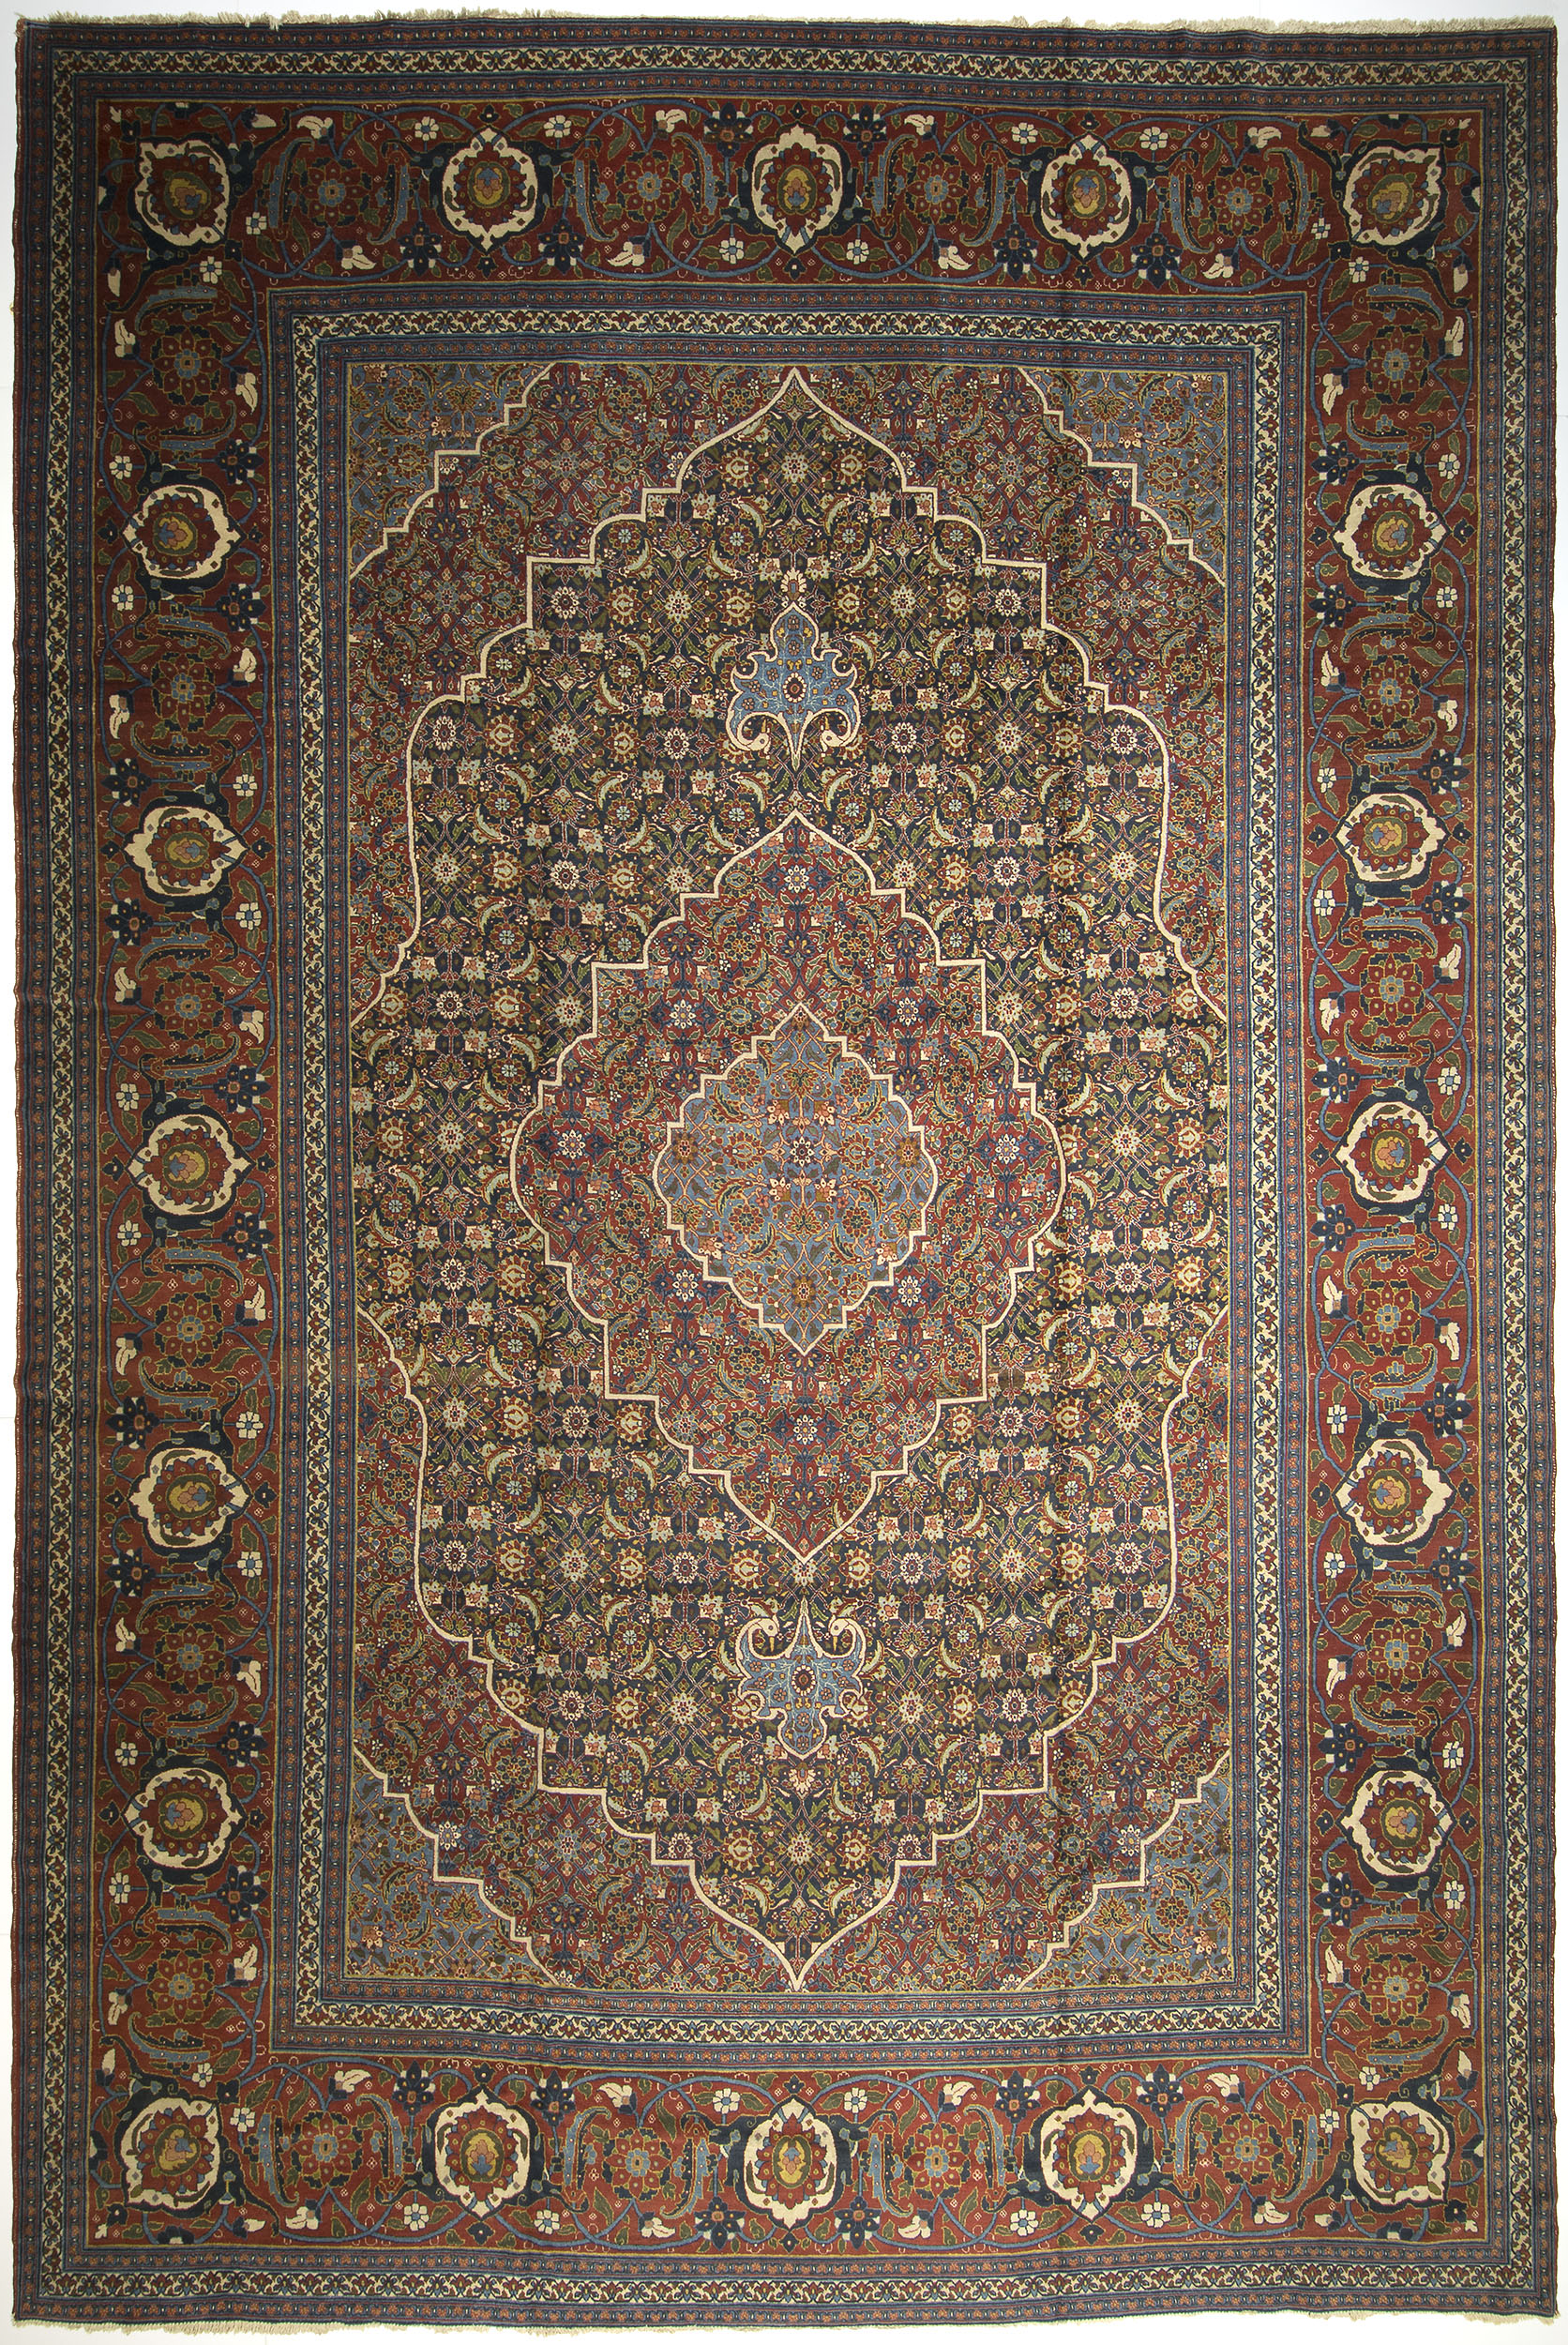 Tabriz Carpet 22' 3" x 14' 10" 